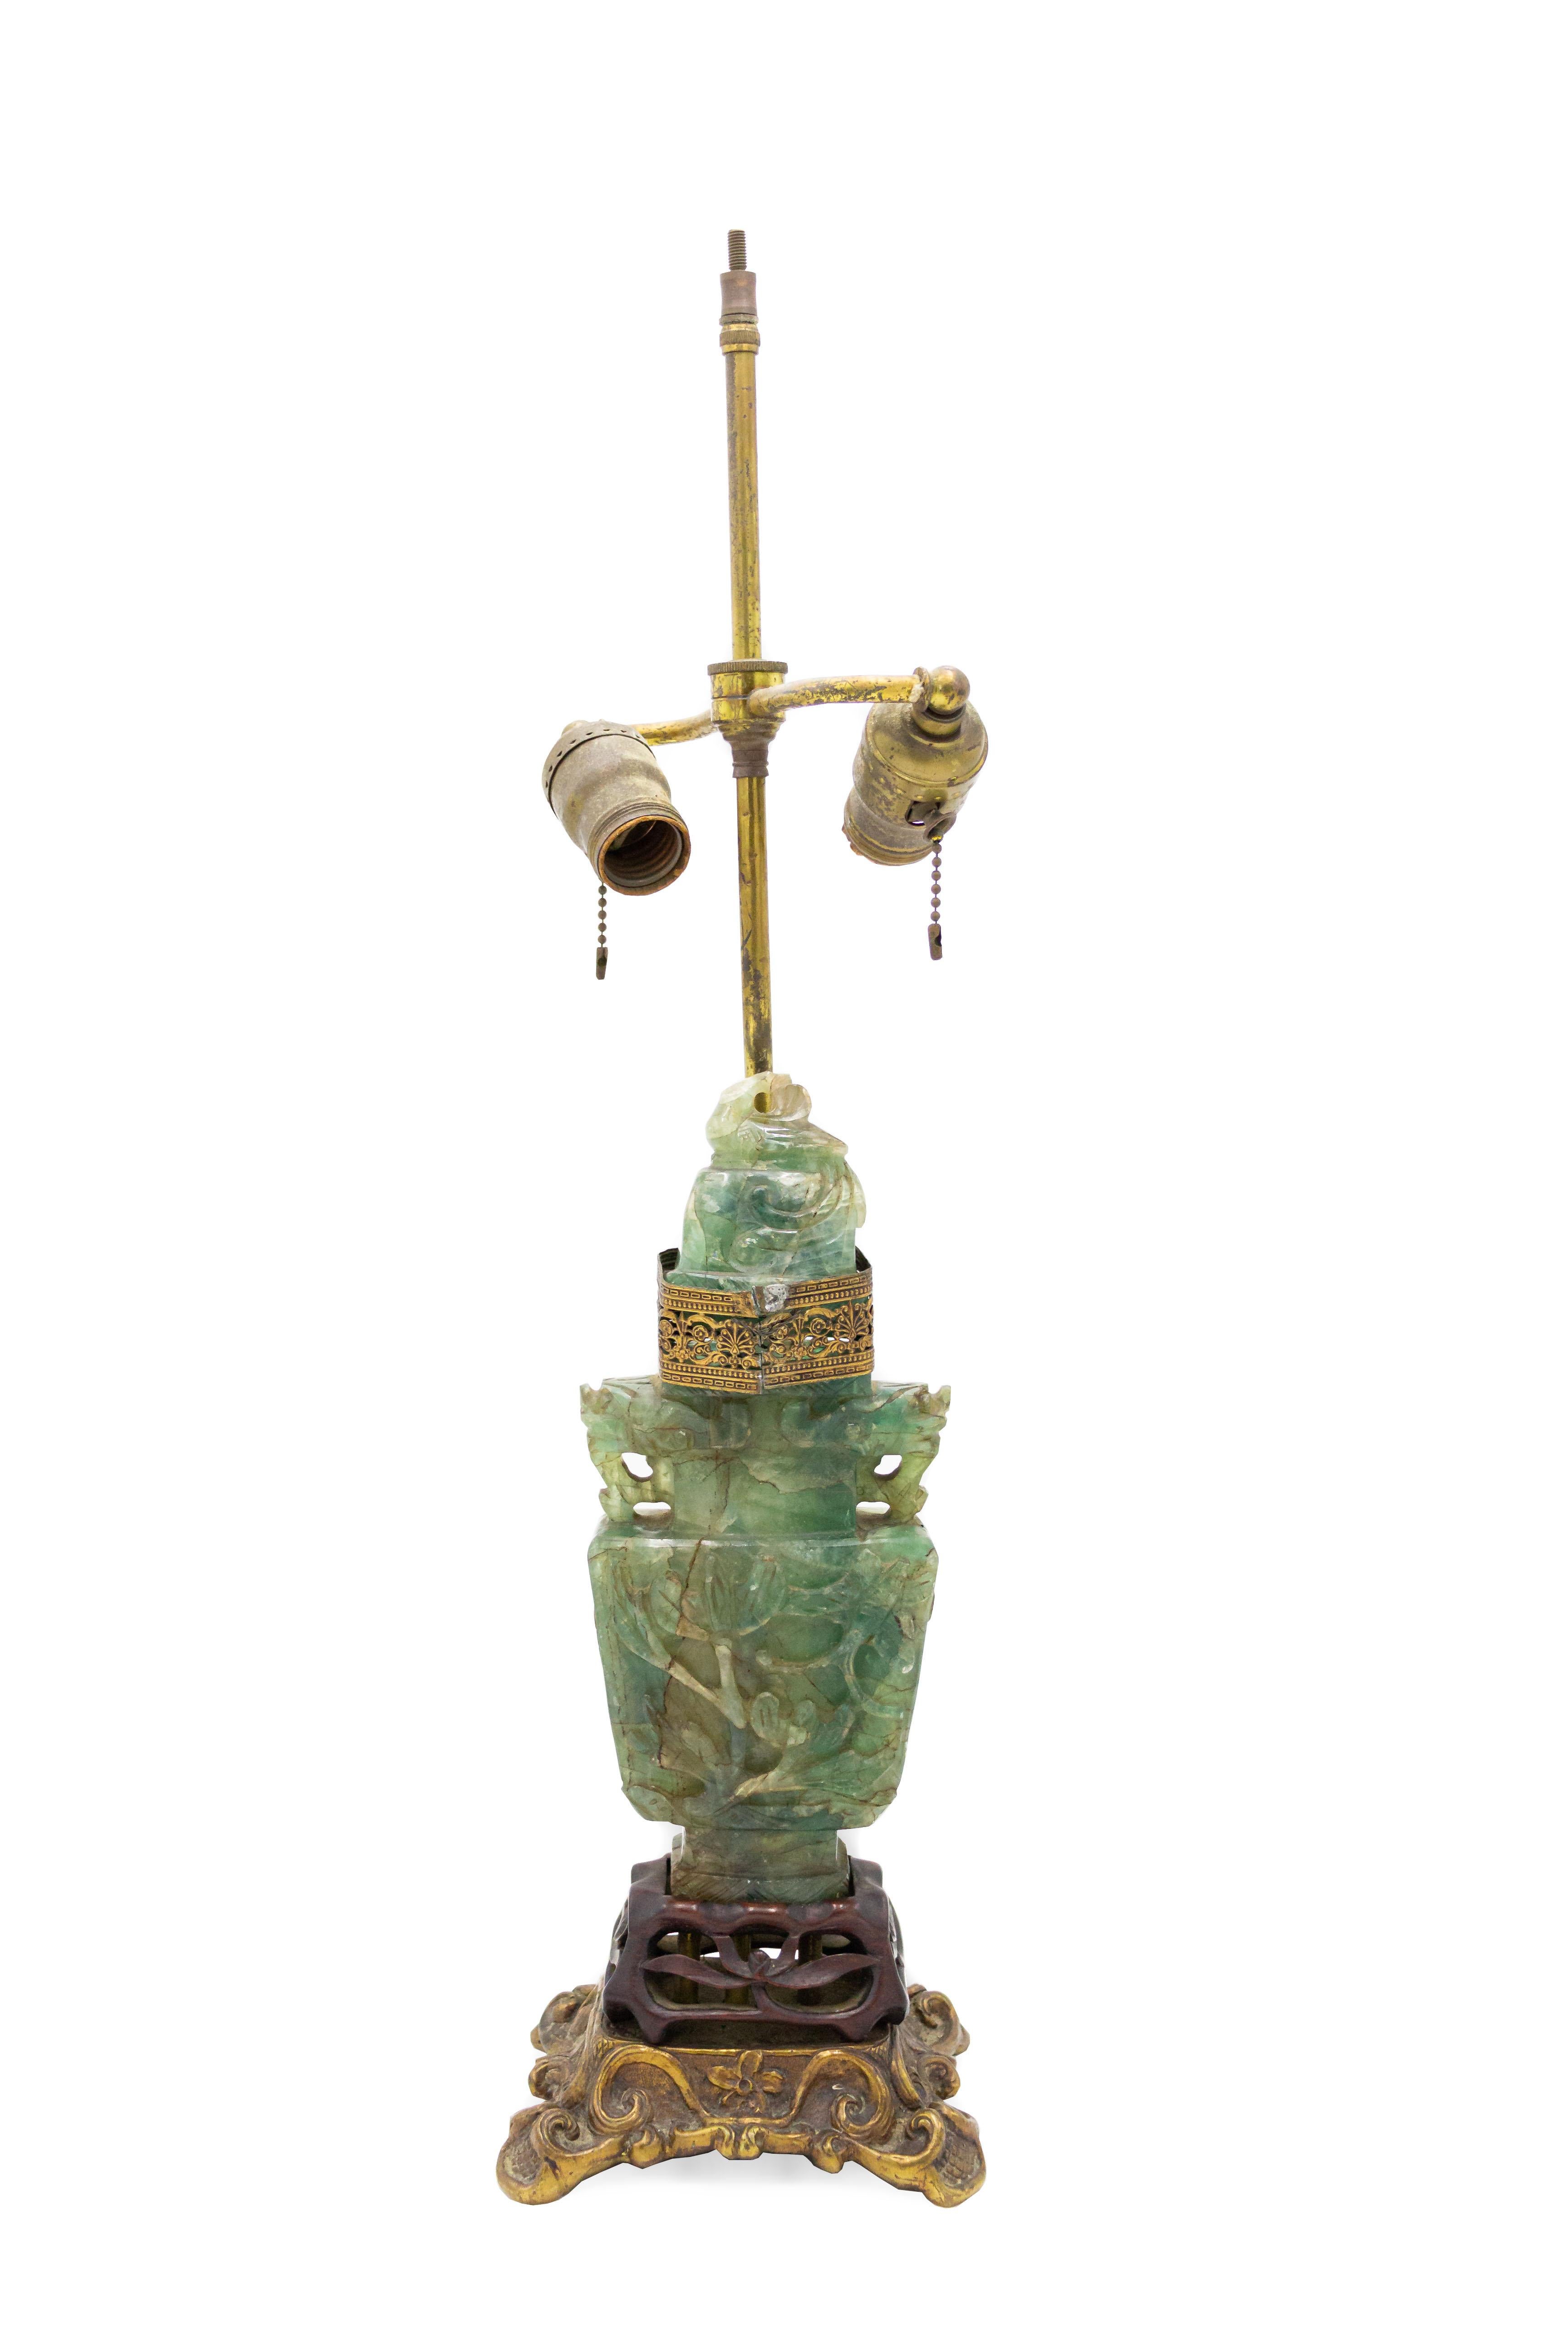 Paire de lampes chinoises en pierre dure de couleur jade avec bases en teck sculpté et métal doré et garniture en métal doré percé avec un motif décoratif.